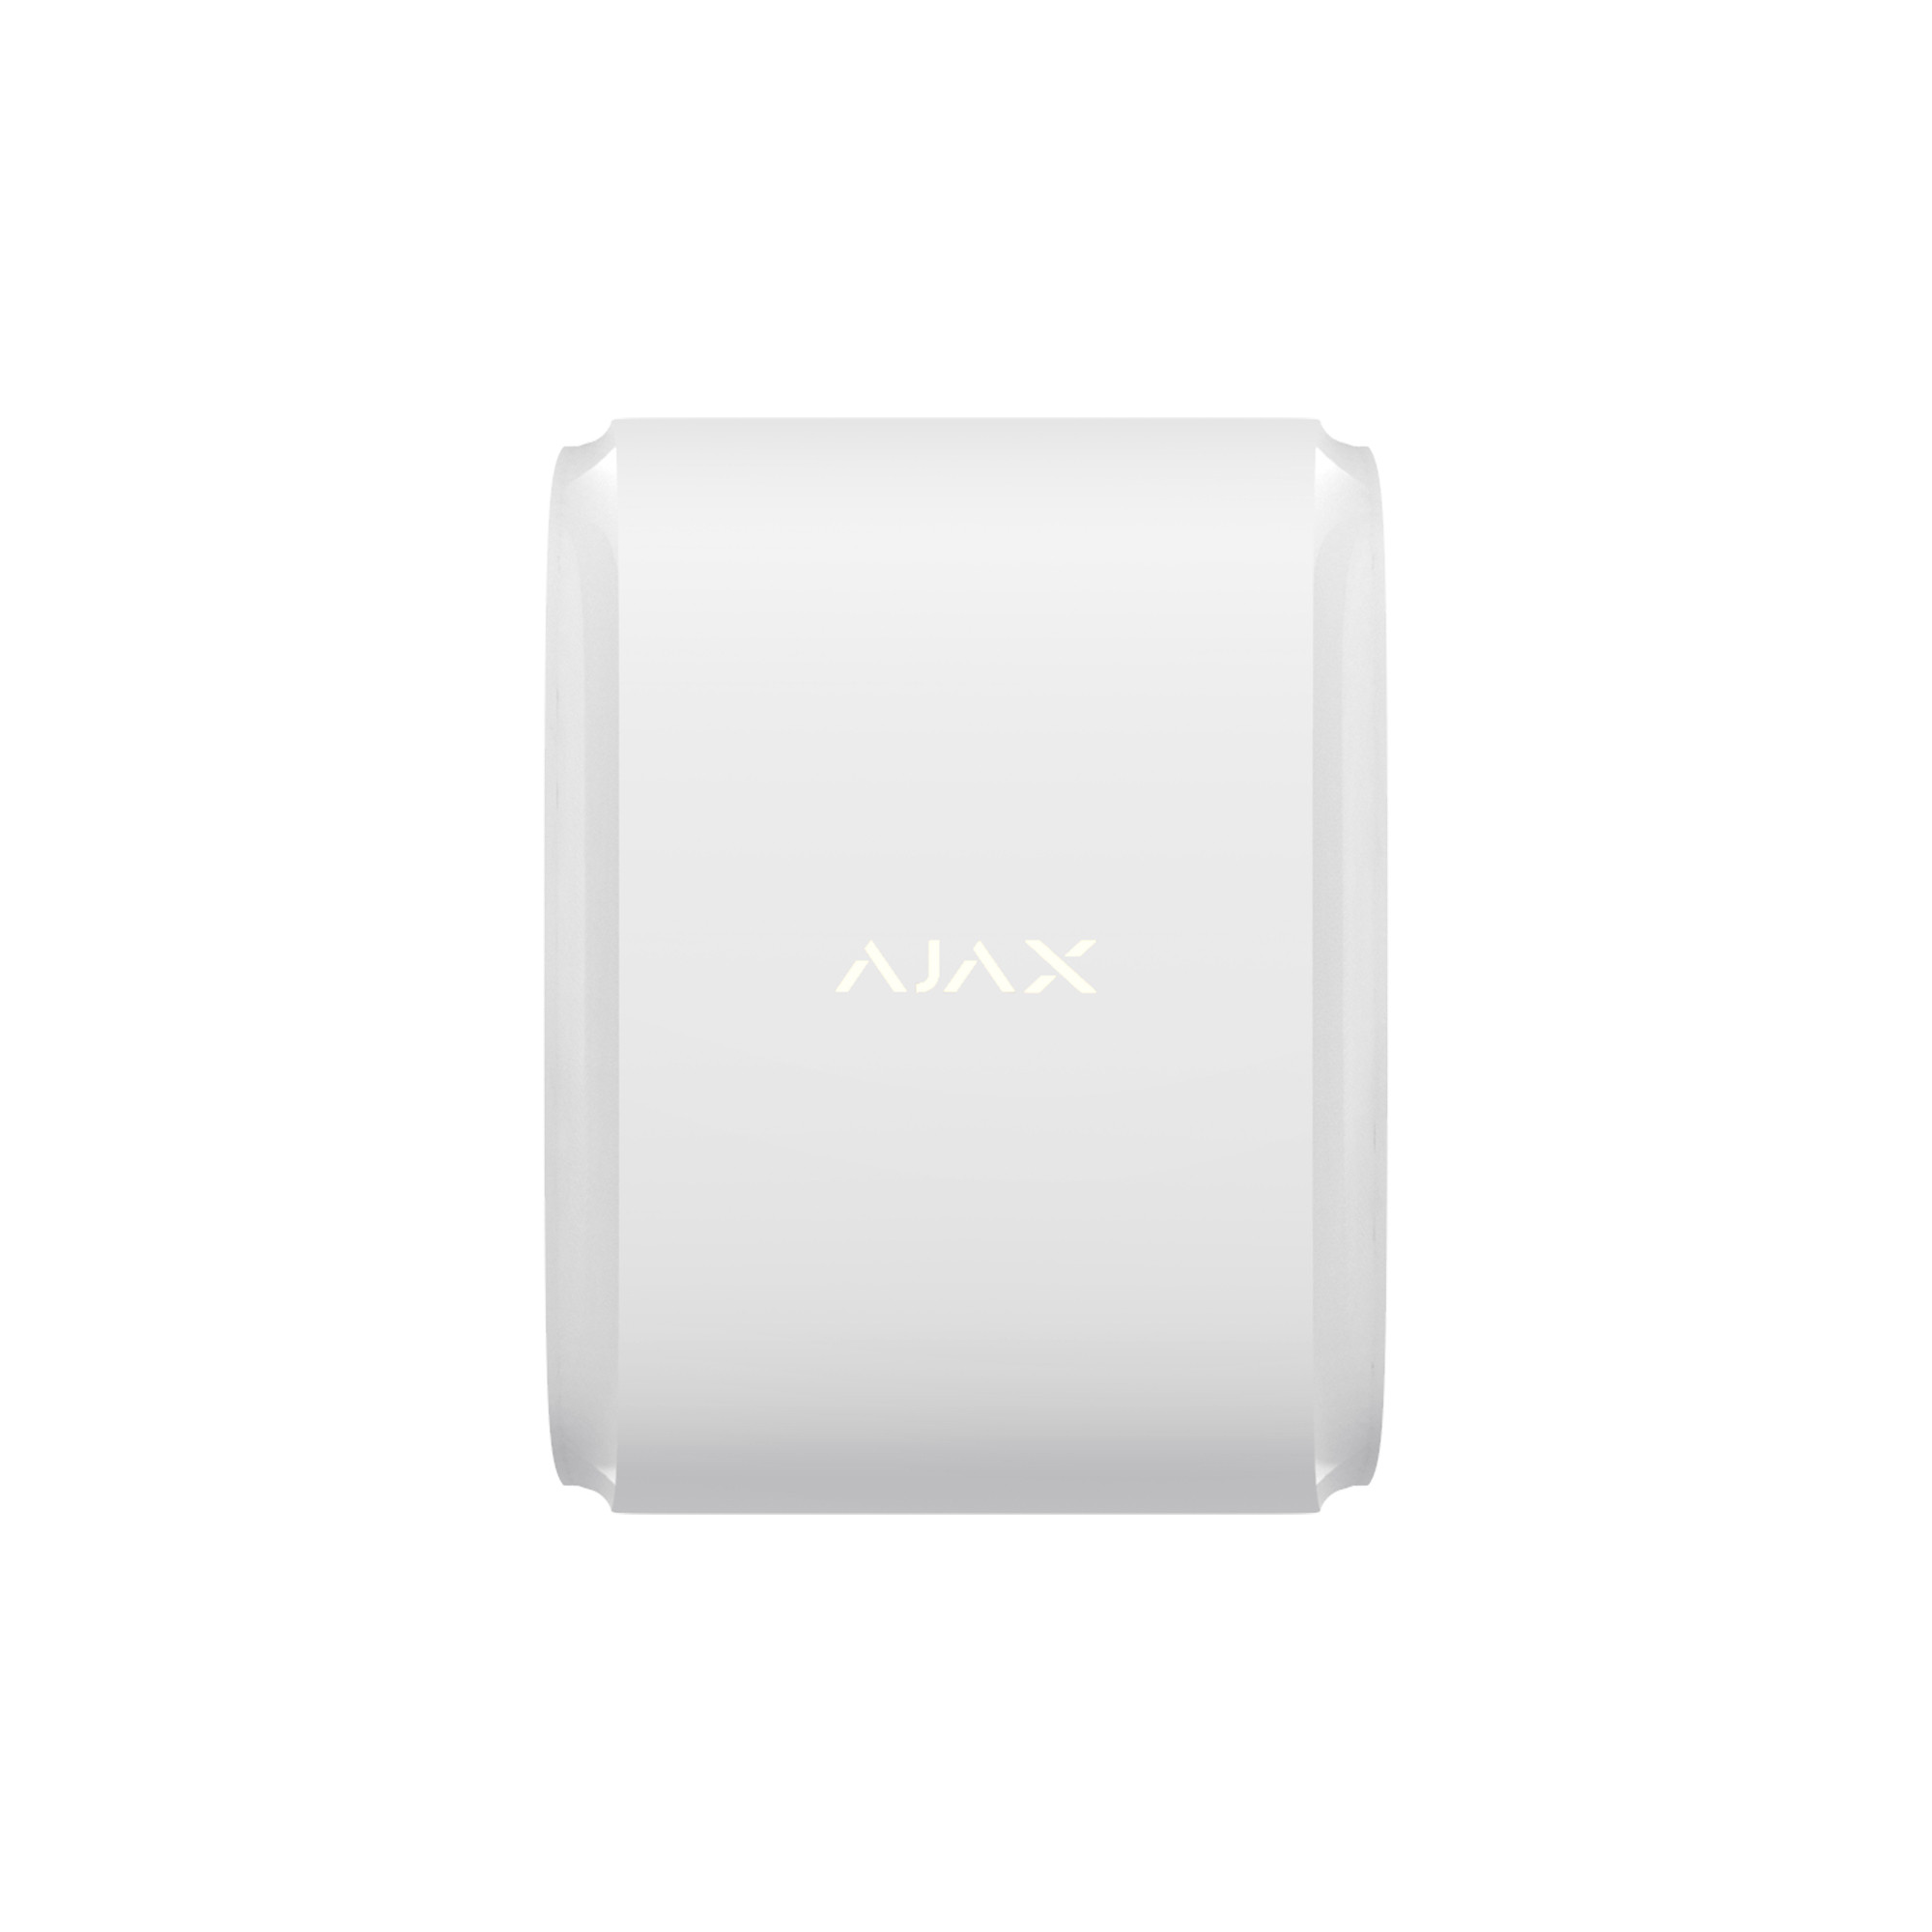 Датчик движения штора Ajax DualCurtain Outdoor в интернет-магазине, главное фото